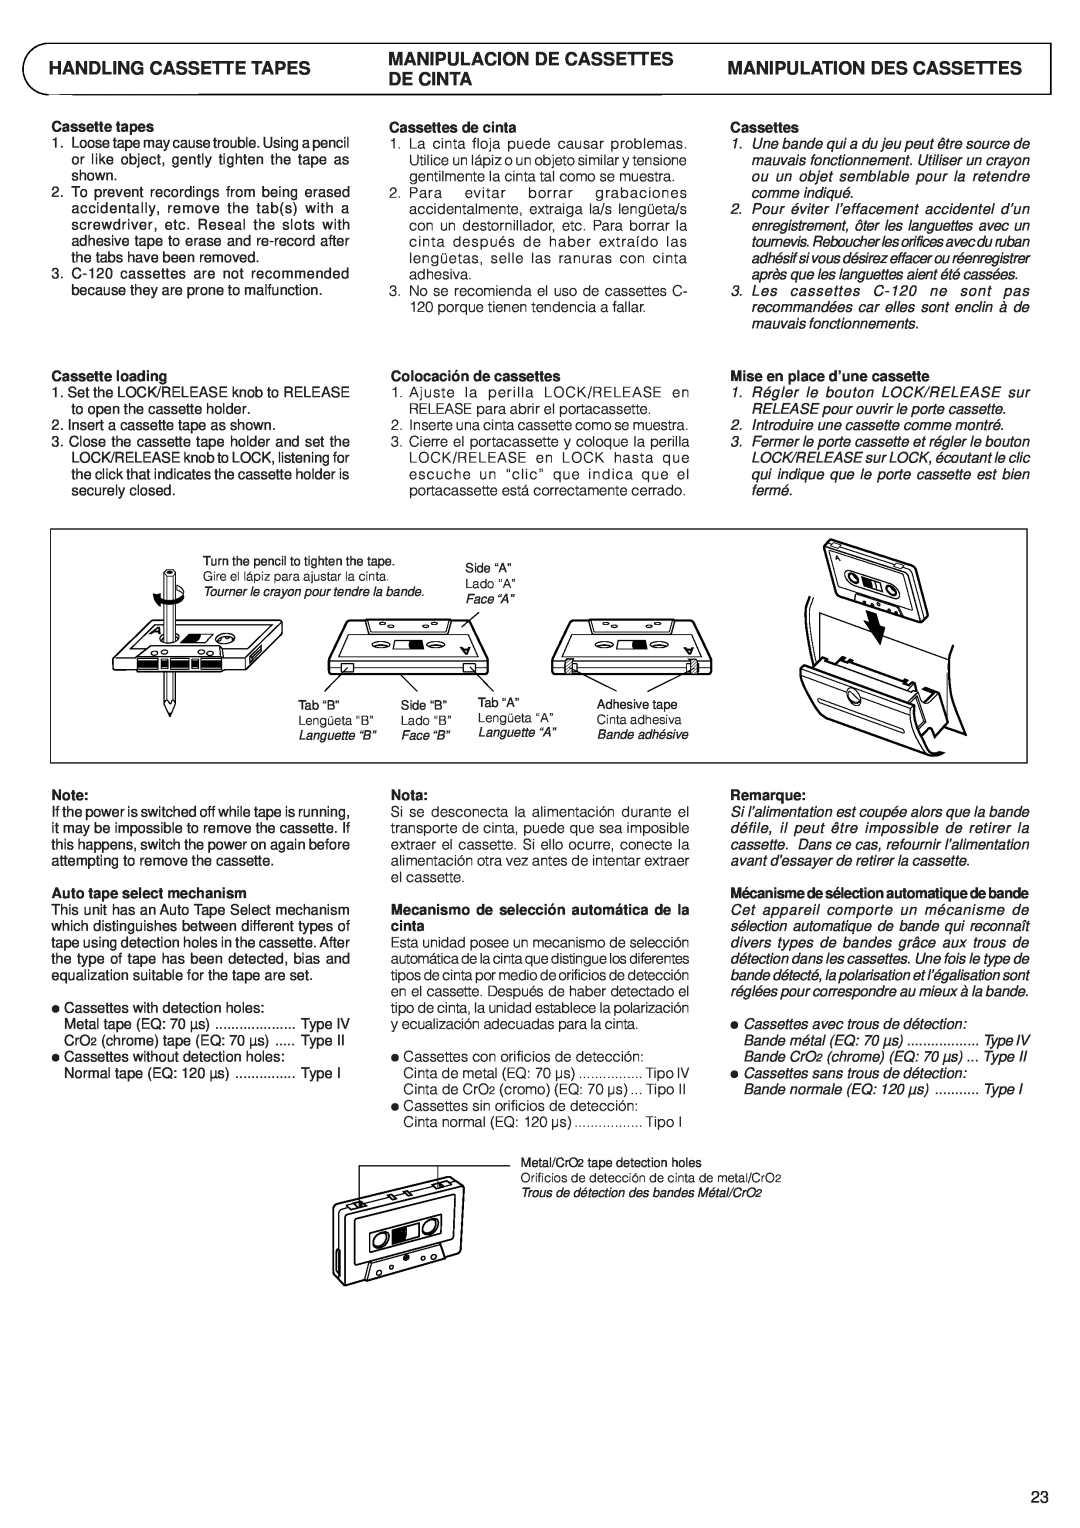 JVC RV-B99 manual Handling Cassette Tapes, Manipulacion De Cassettes De Cinta, Manipulation Des Cassettes 